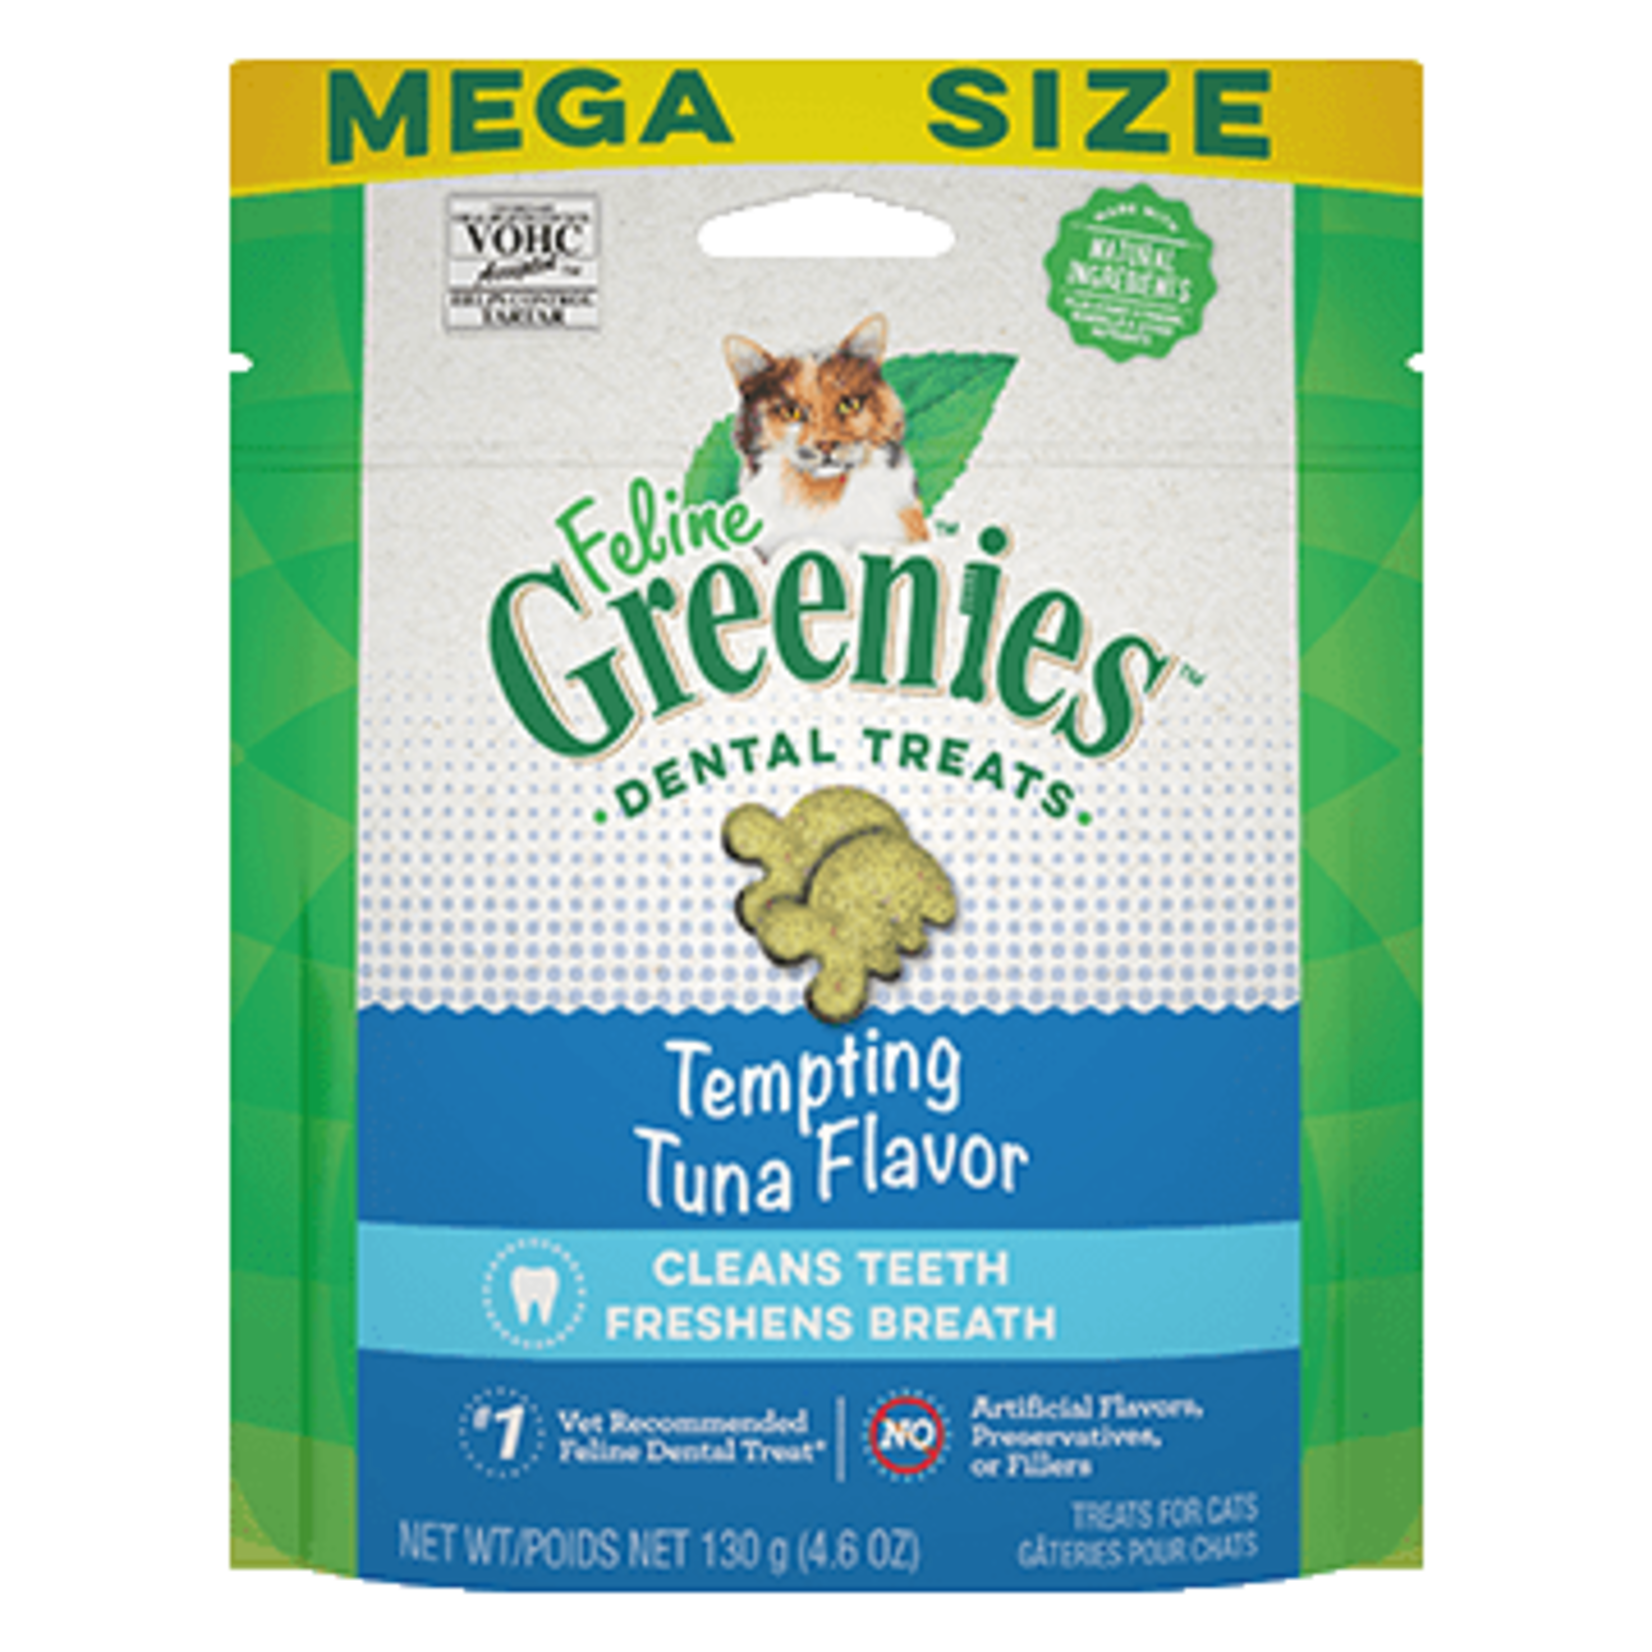 Greenies Feline Greenies Cat Dental Treats Tempting Tuna Flavor